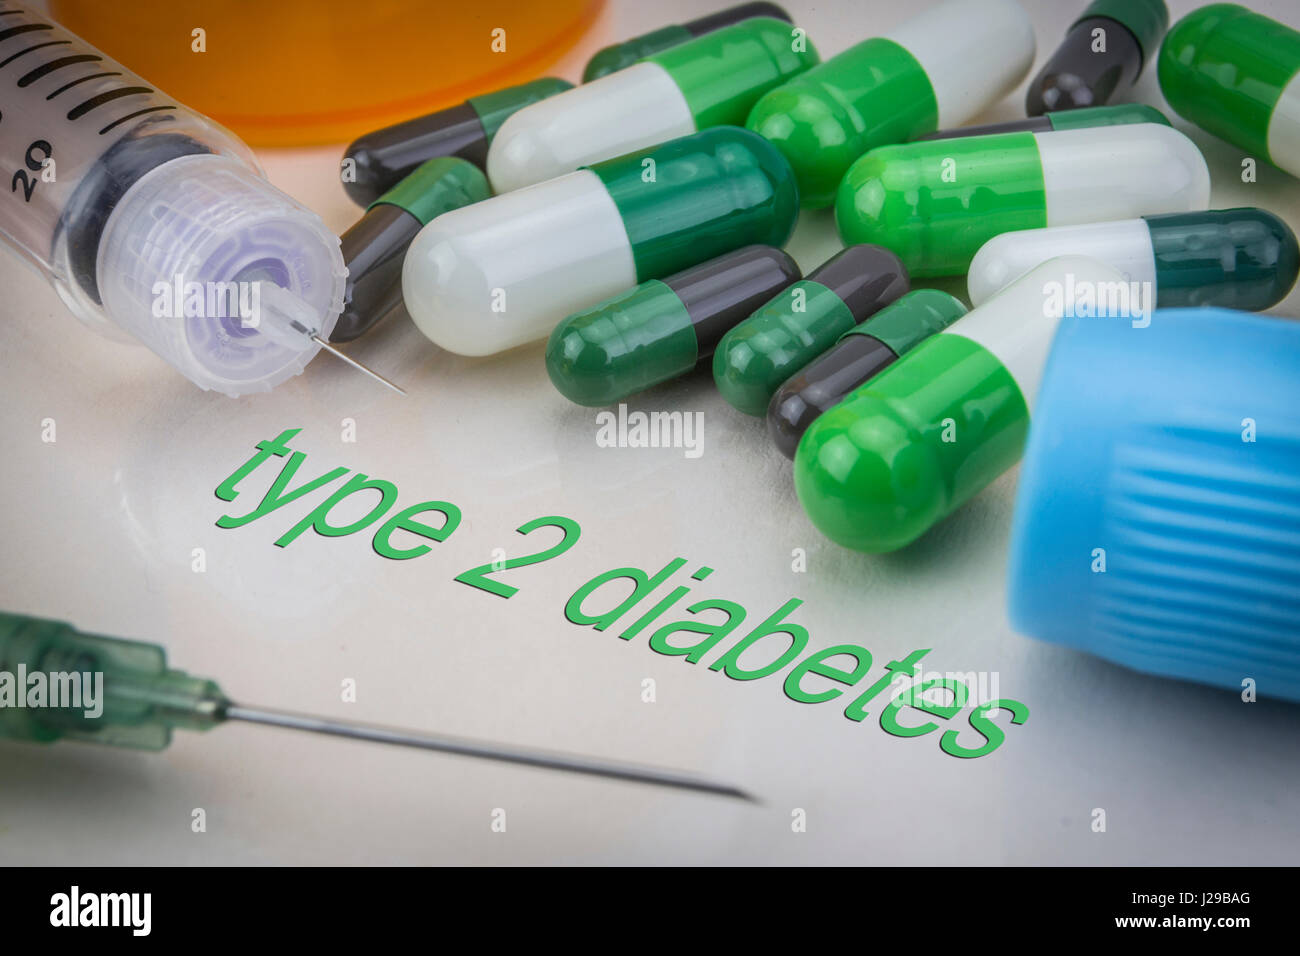 Il diabete di tipo 2, medicinali e siringhe come concetto di trattamento ordinario la salute Foto Stock